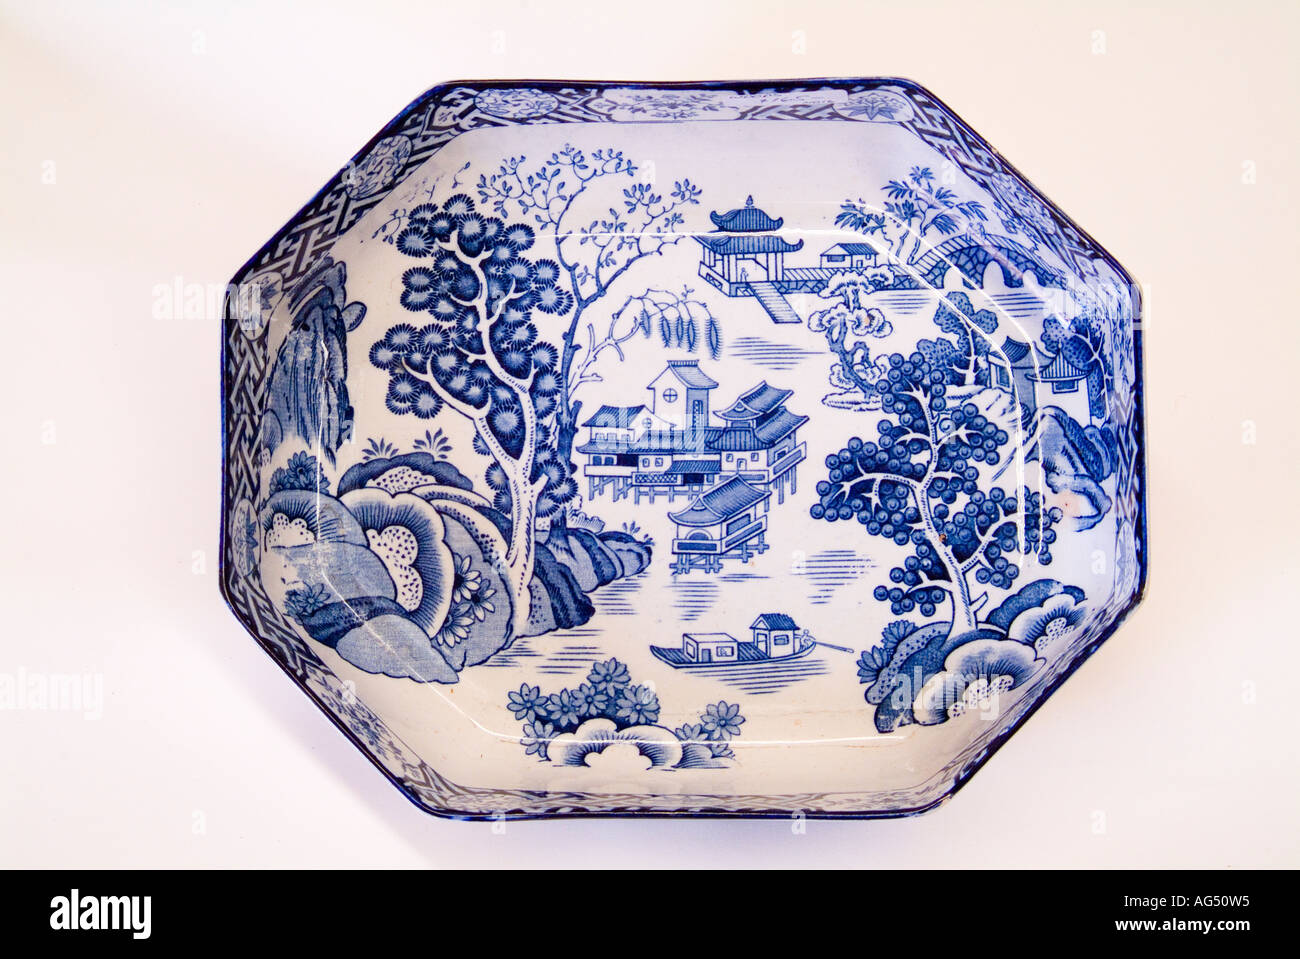 Un plat chinois émaillé bleu antique. Ce n'est pas le motif communément connu sous le nom de motif saule. Banque D'Images